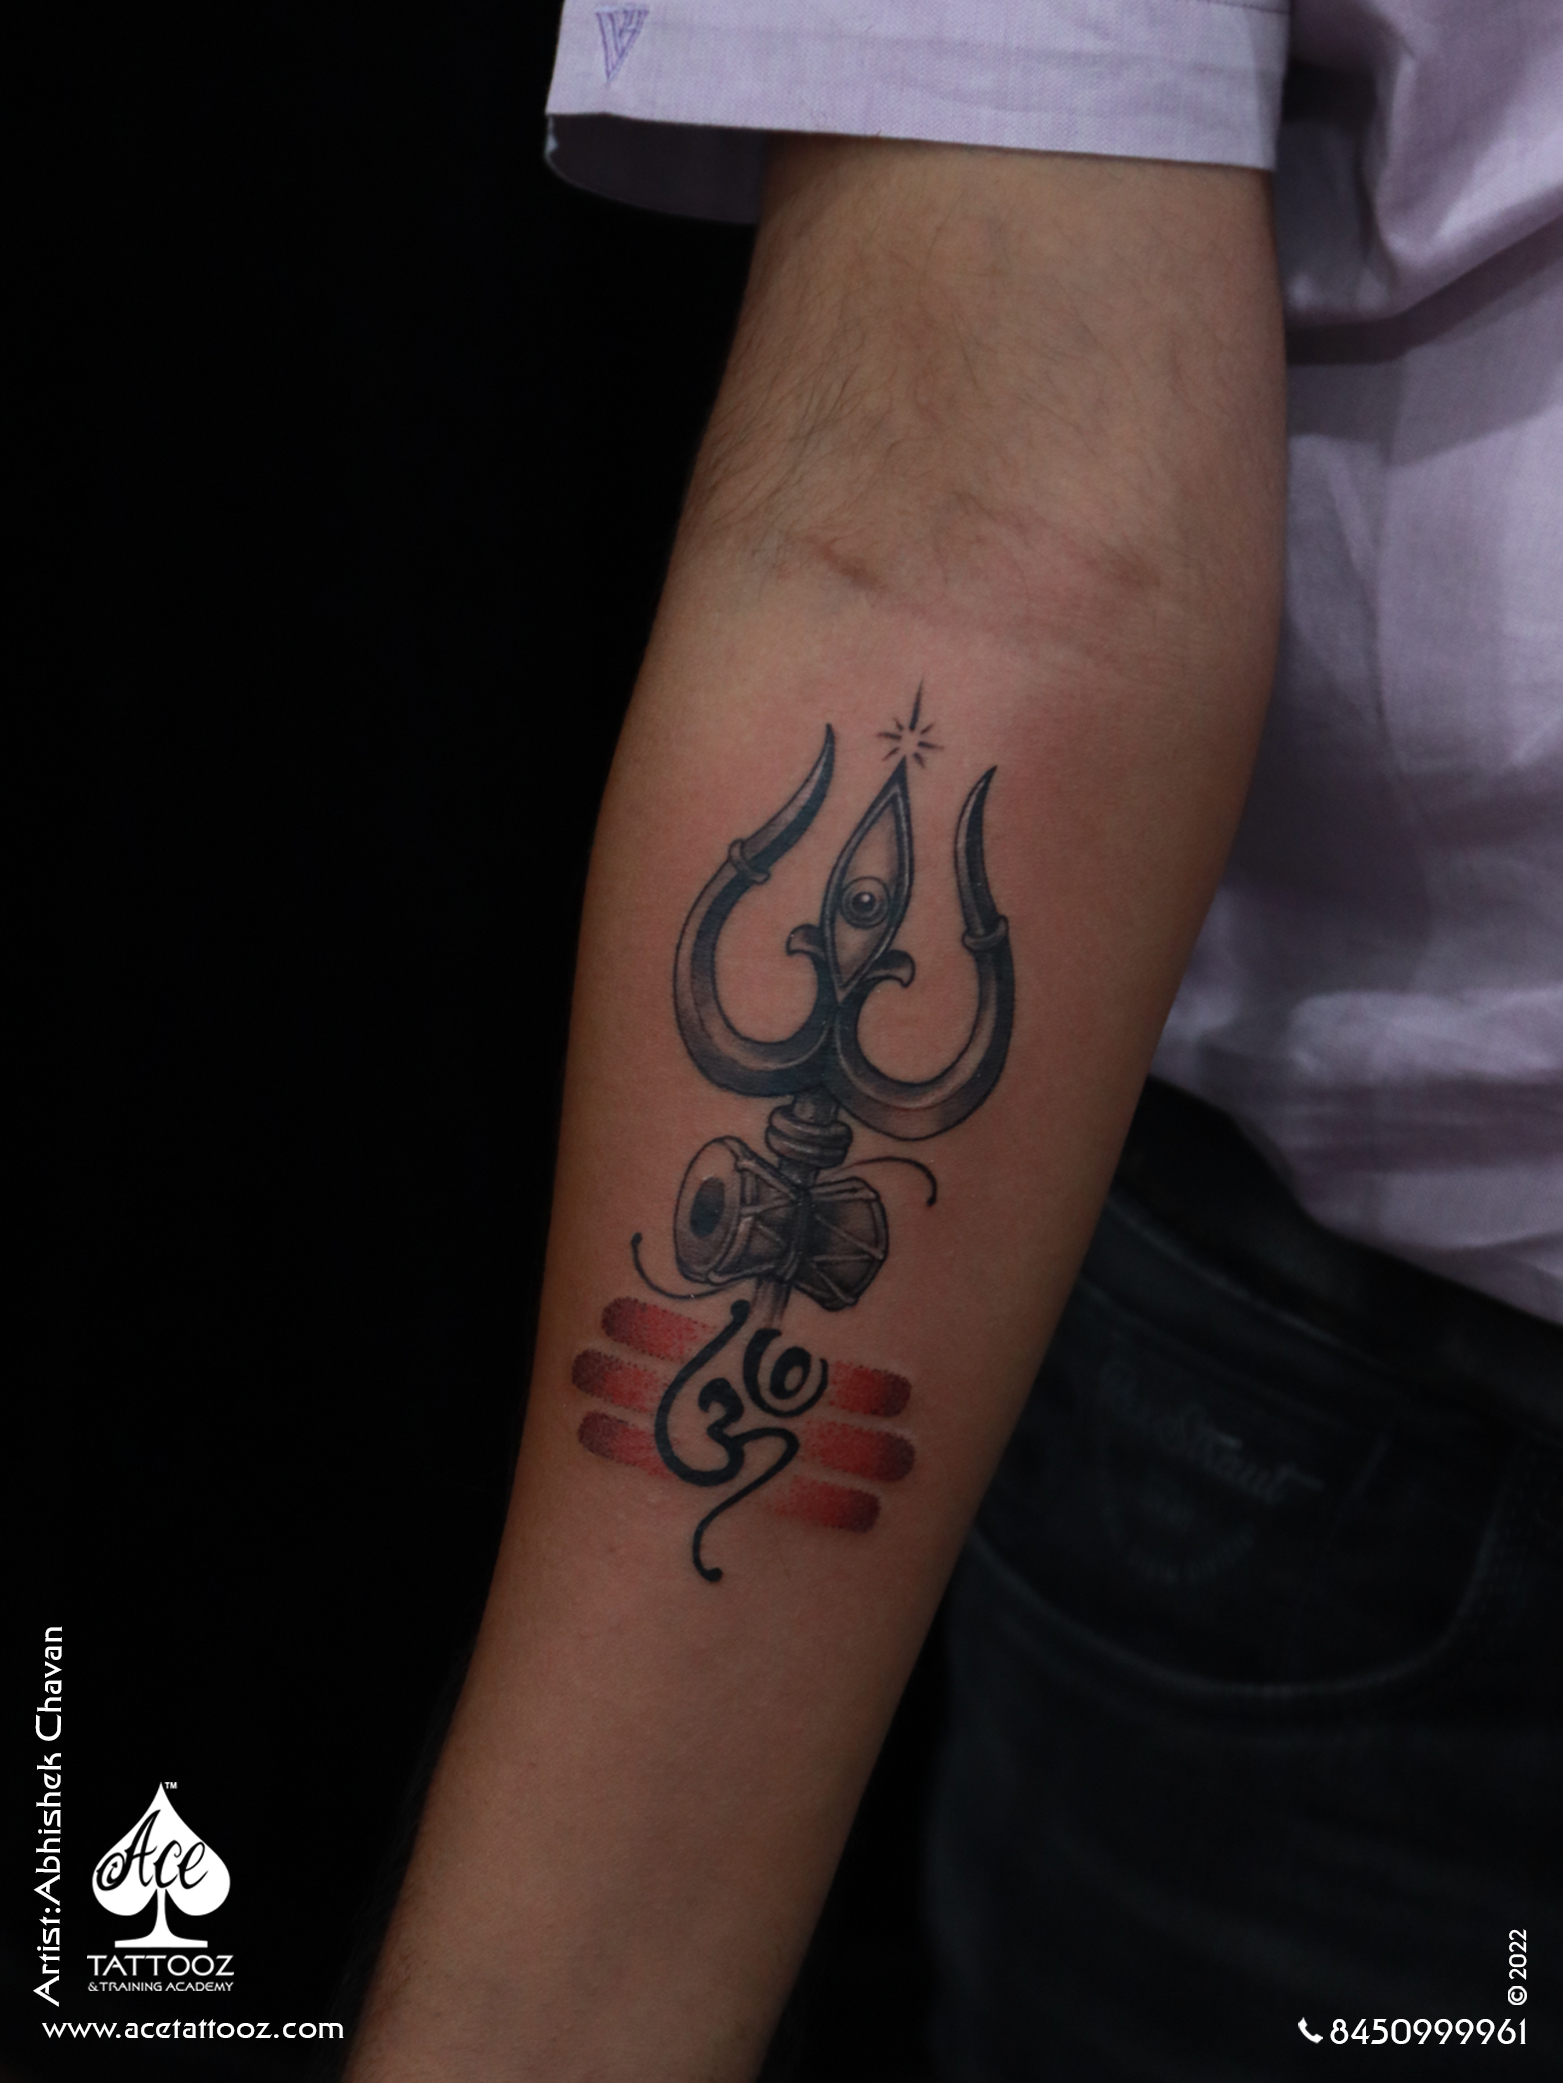 Shakti | Tattoos with meaning, Name tattoo, Name tattoos